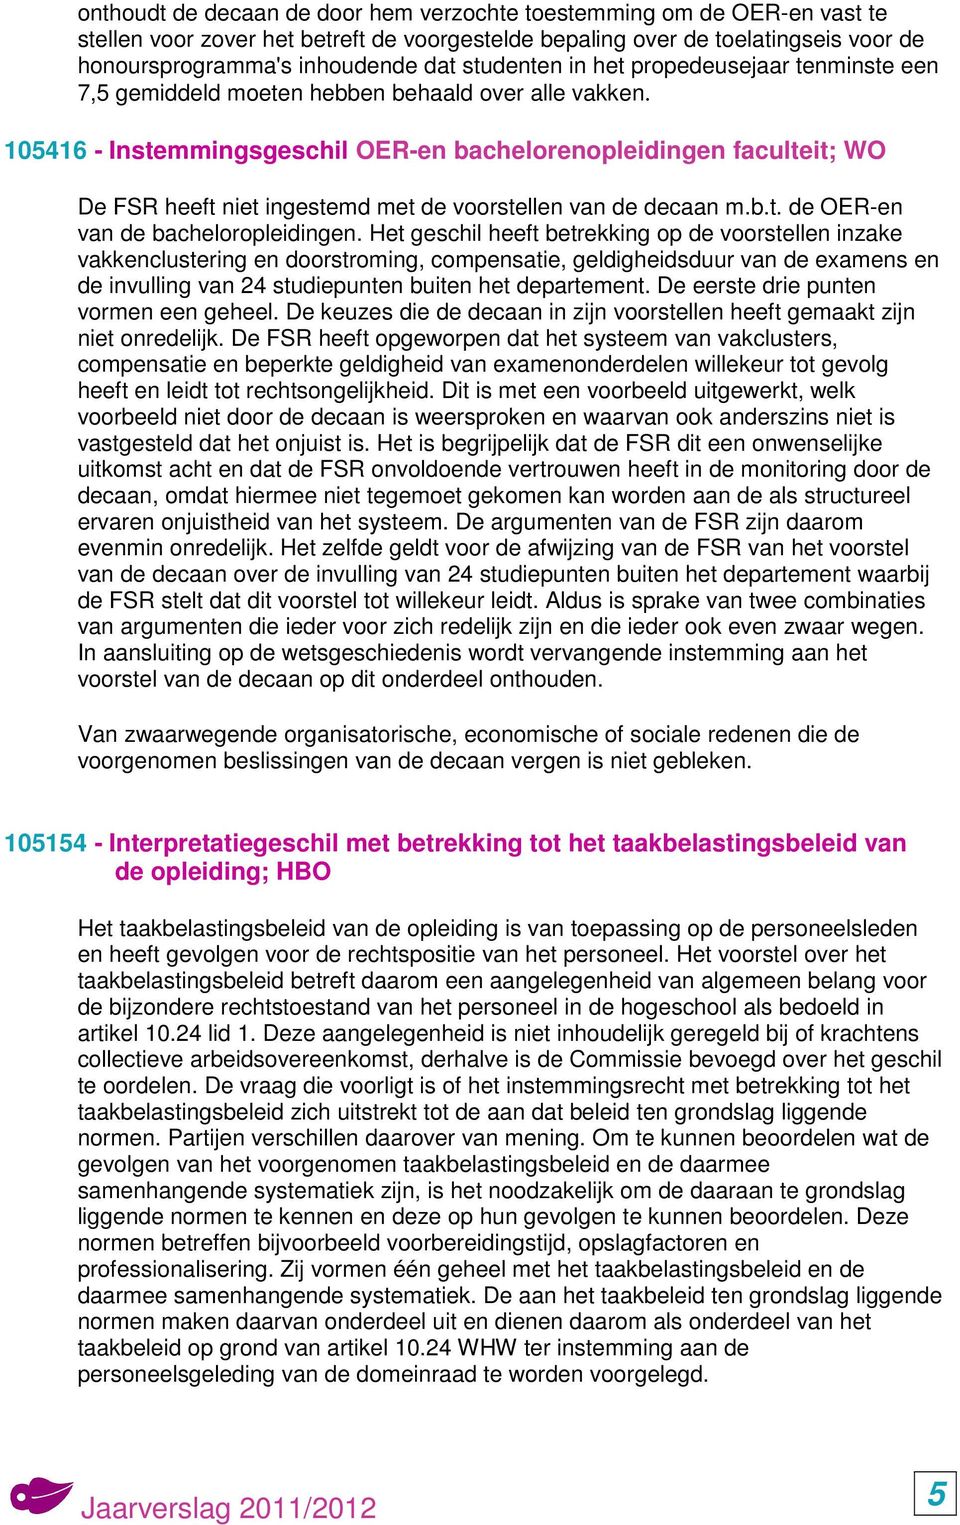 105416 - Instemmingsgeschil OER-en bachelorenopleidingen faculteit; WO De FSR heeft niet ingestemd met de voorstellen van de decaan m.b.t. de OER-en van de bacheloropleidingen.